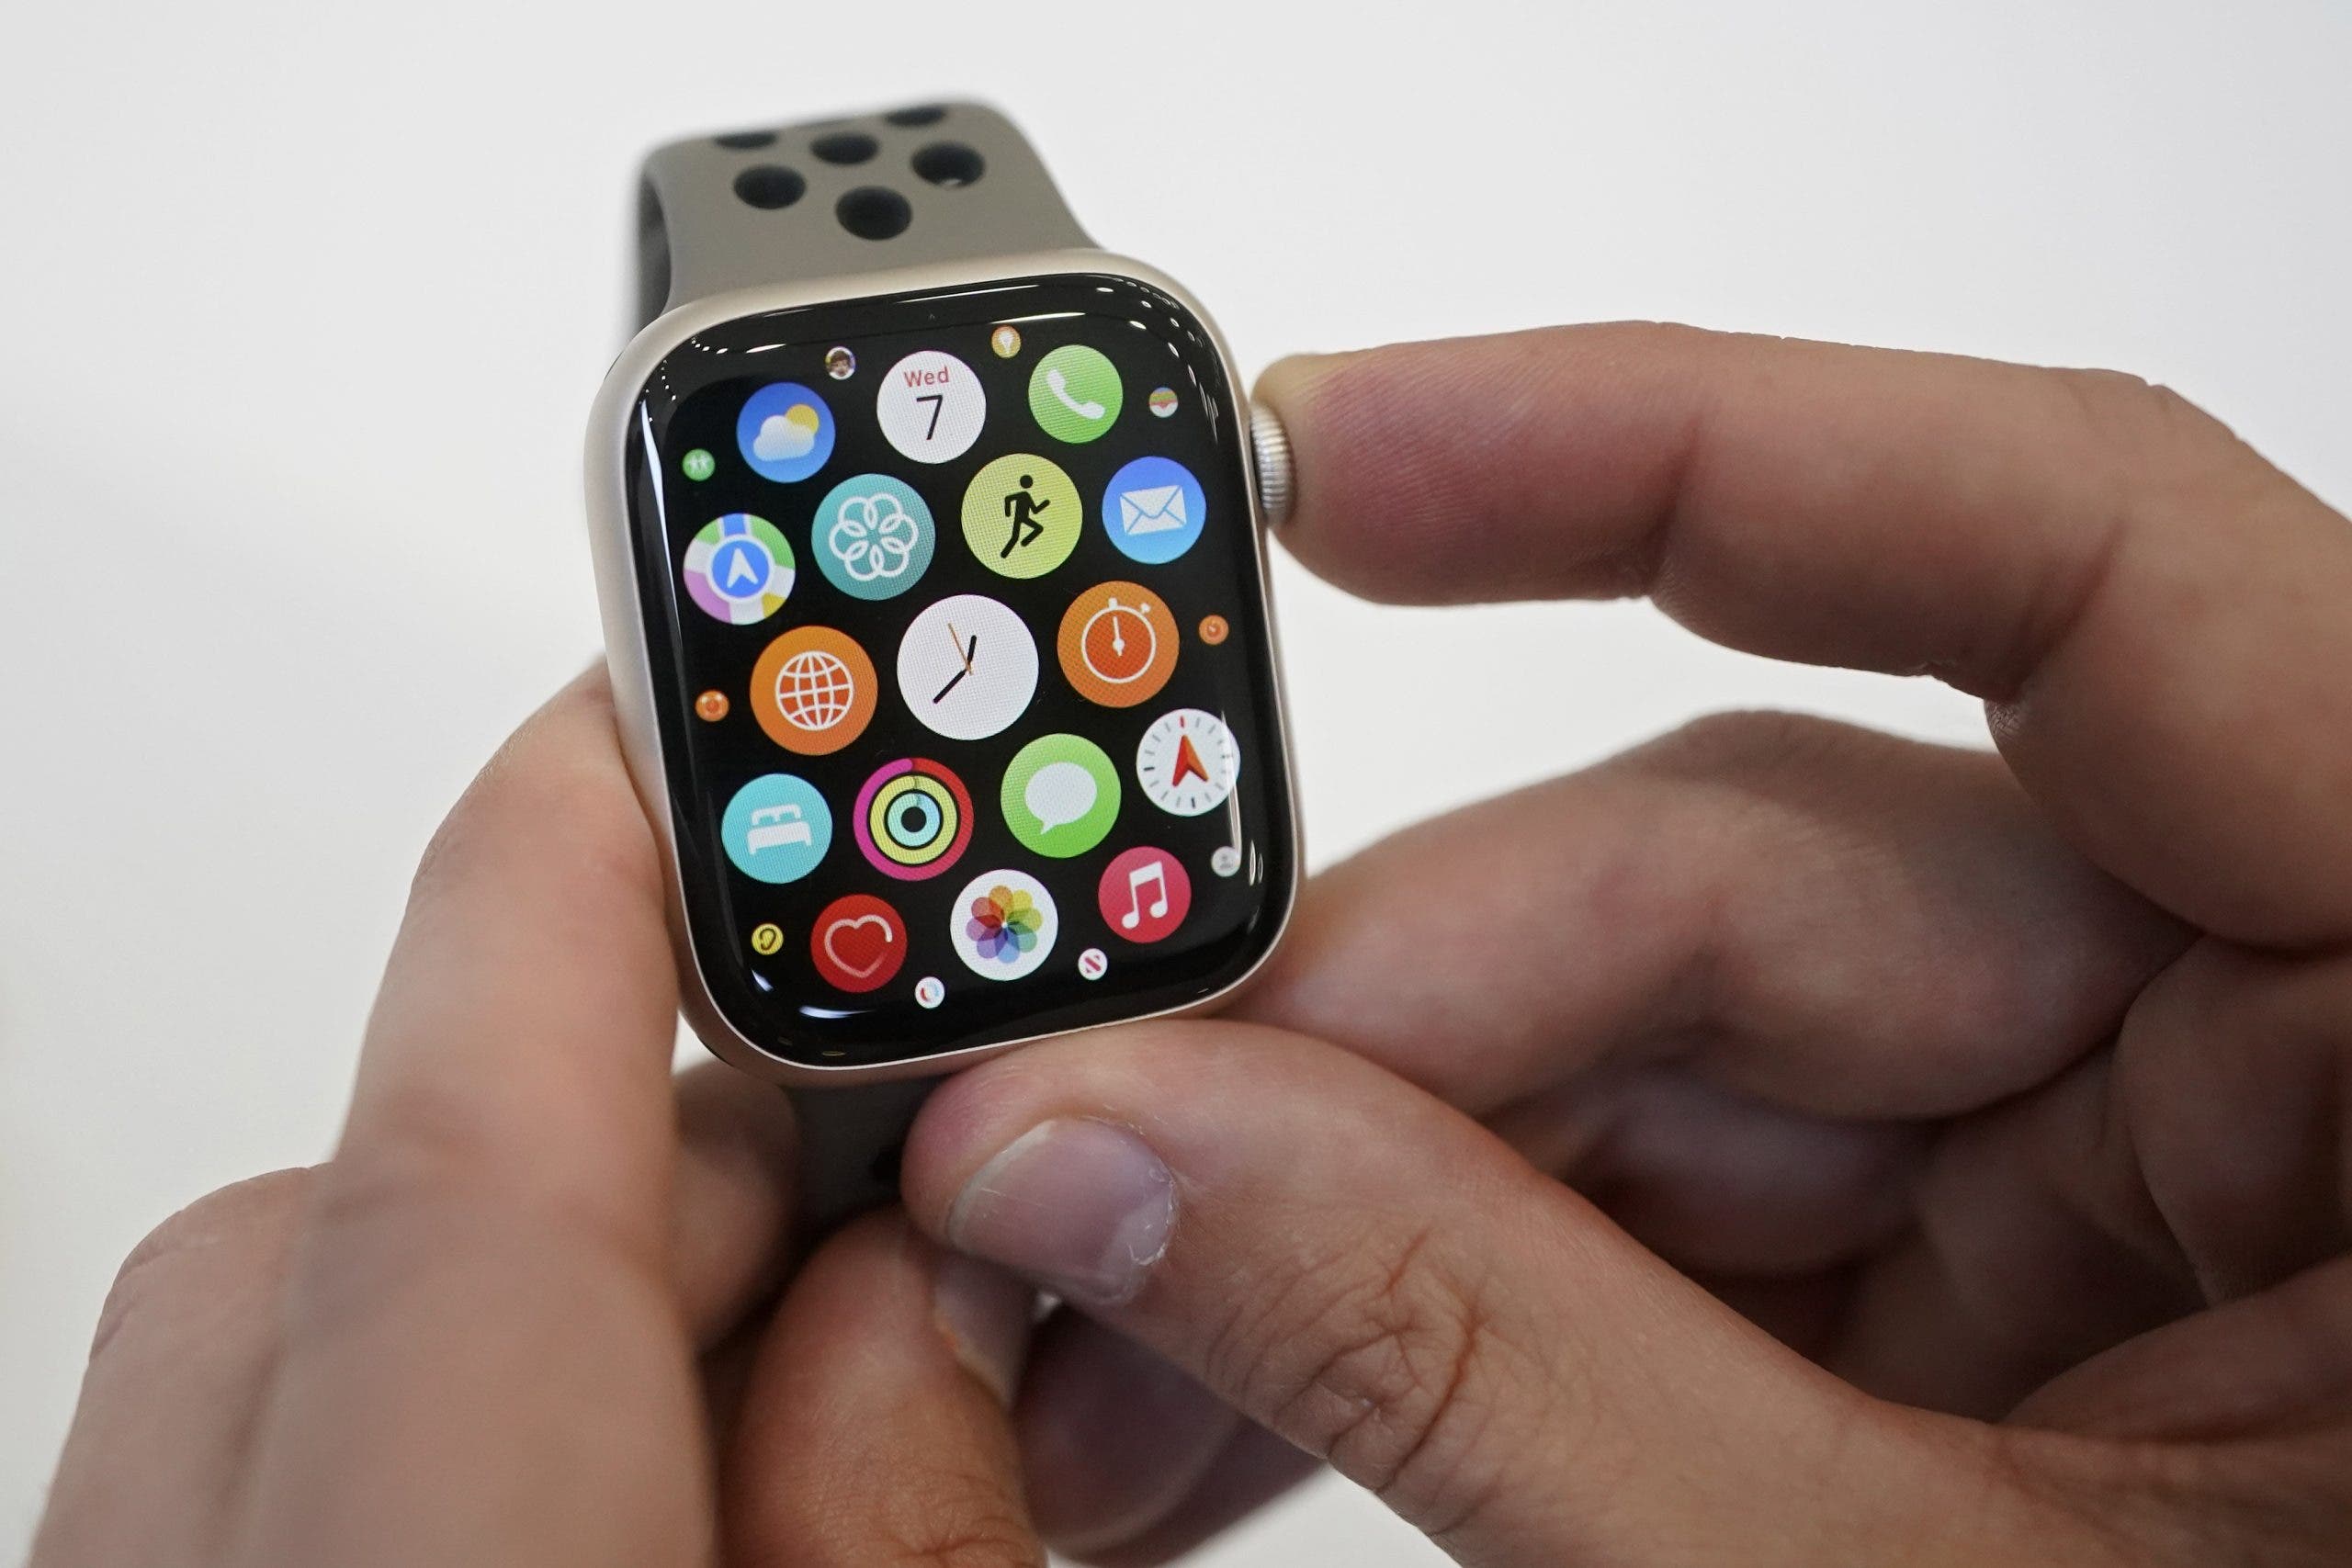 Apple presenta su nuevo reloj inteligente, que predice el ciclo de ovulación